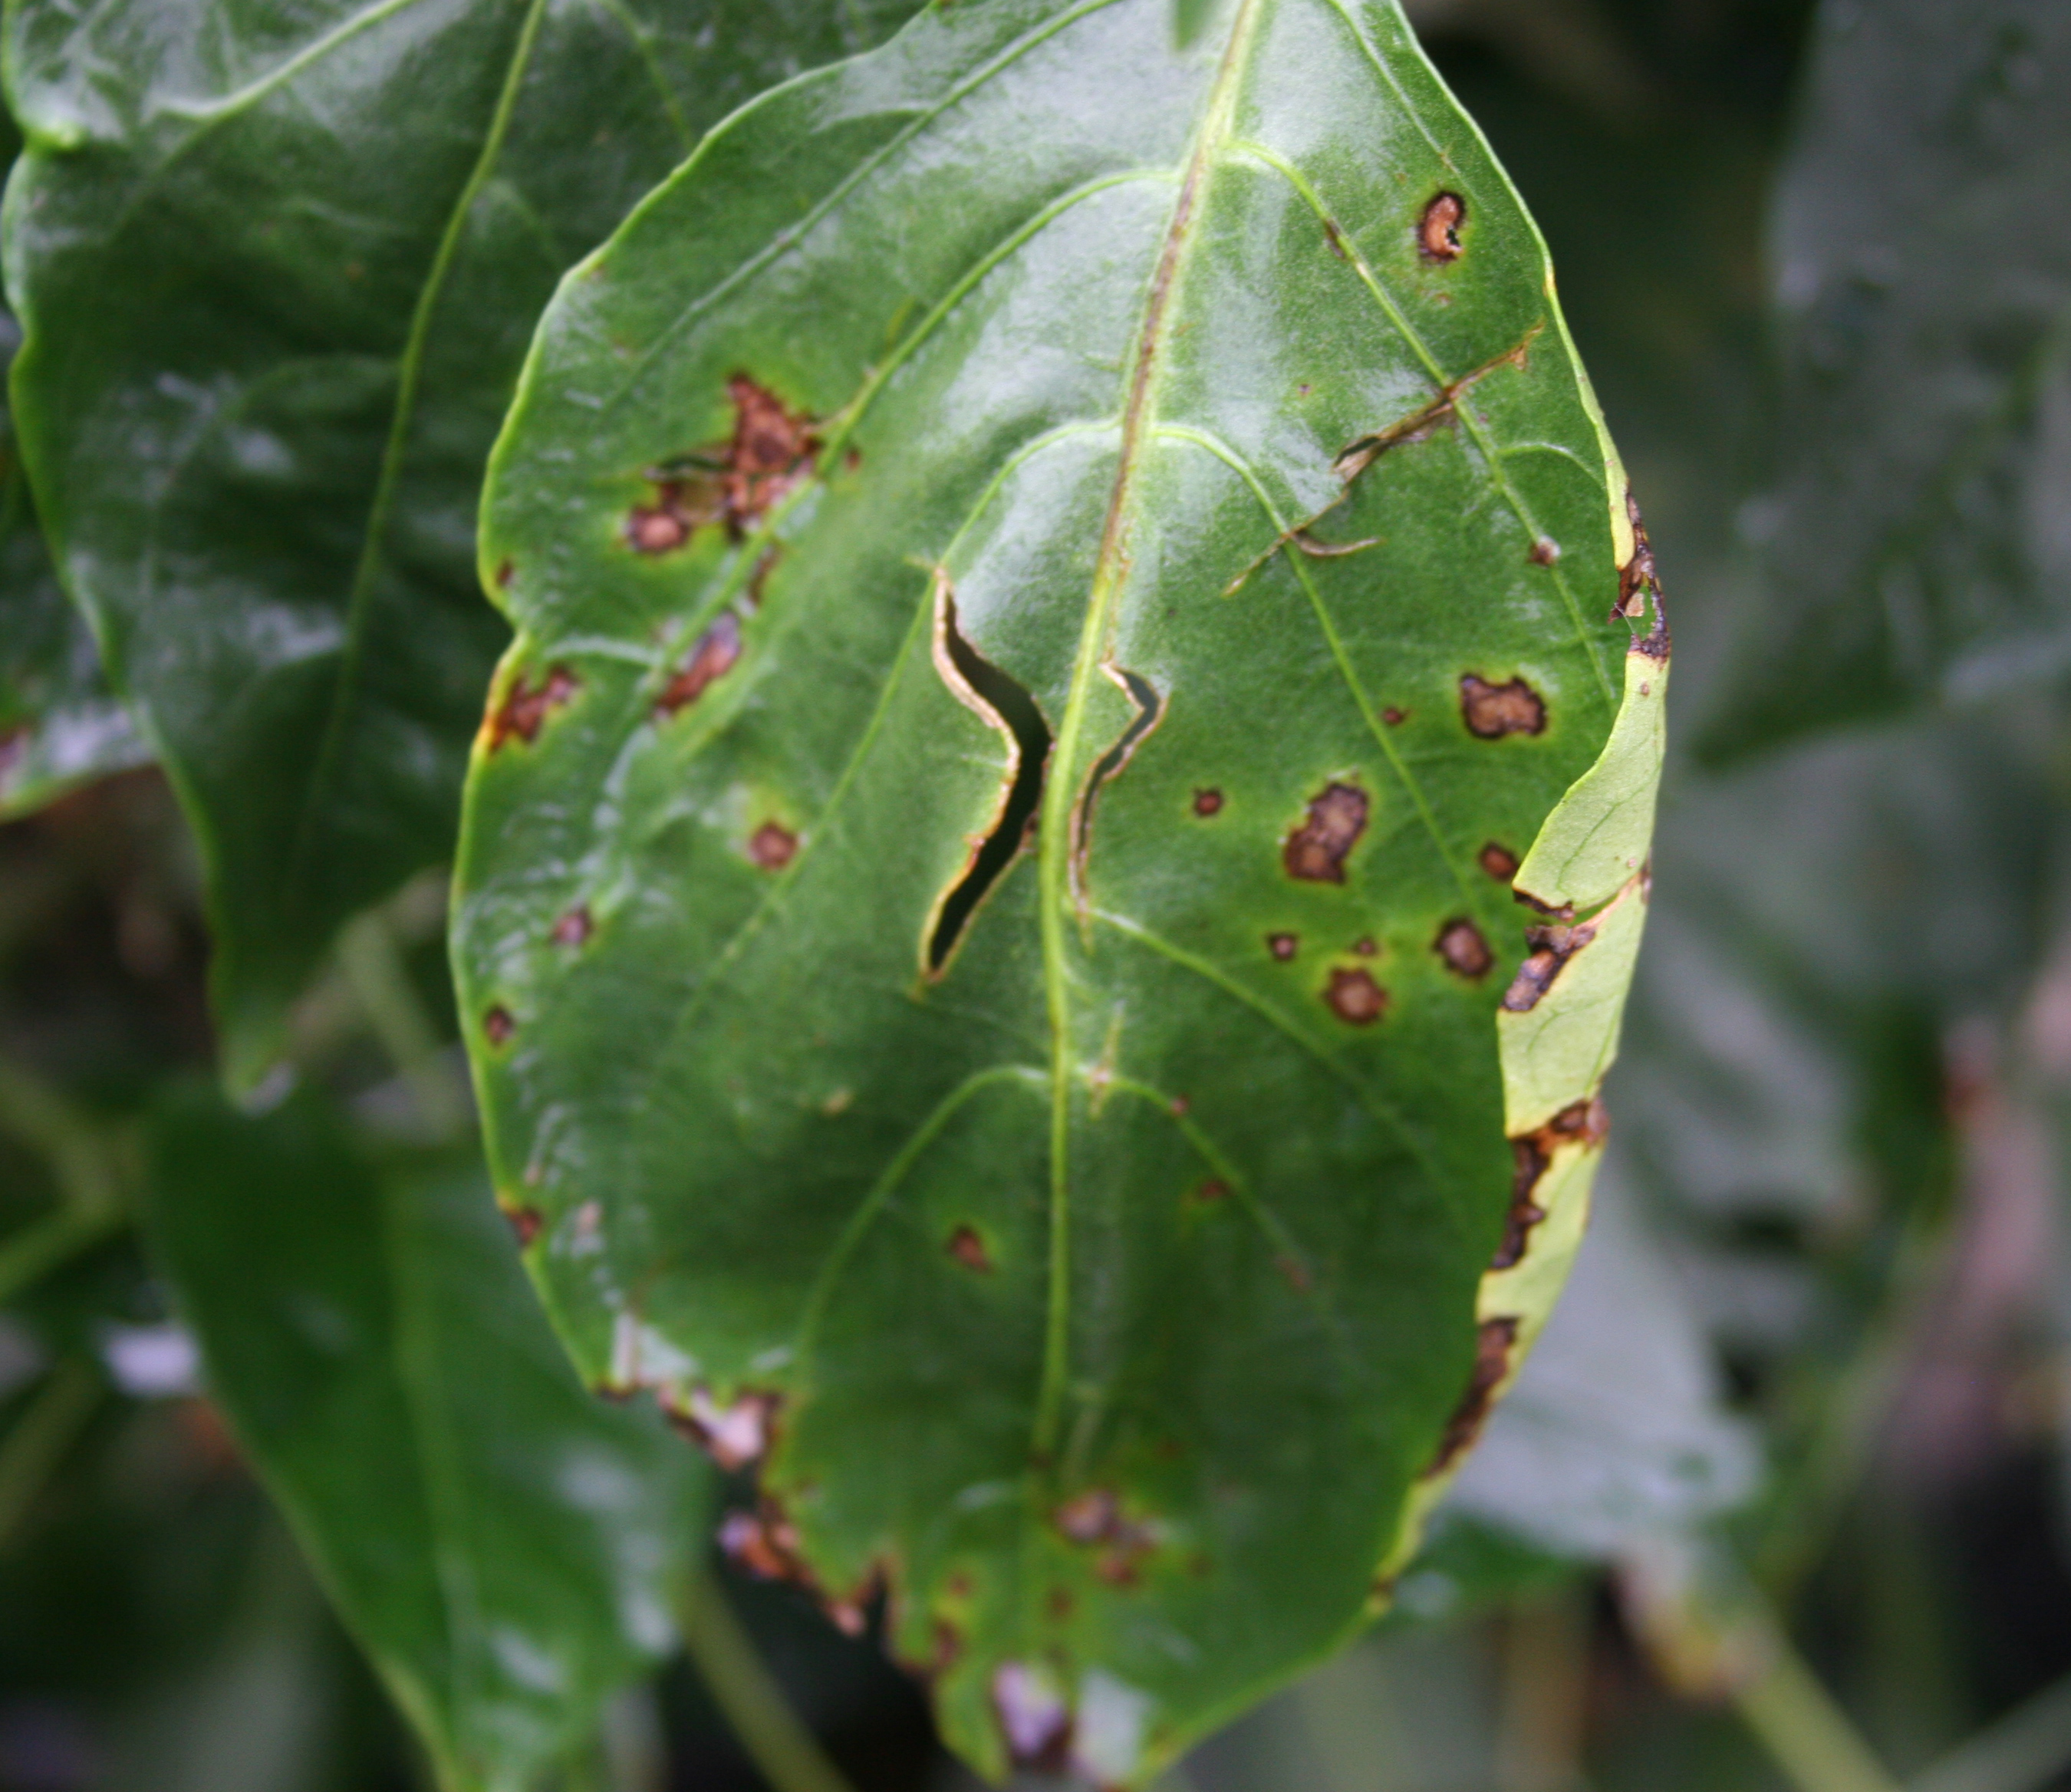 Bacterial spot on bell pepper leaf.